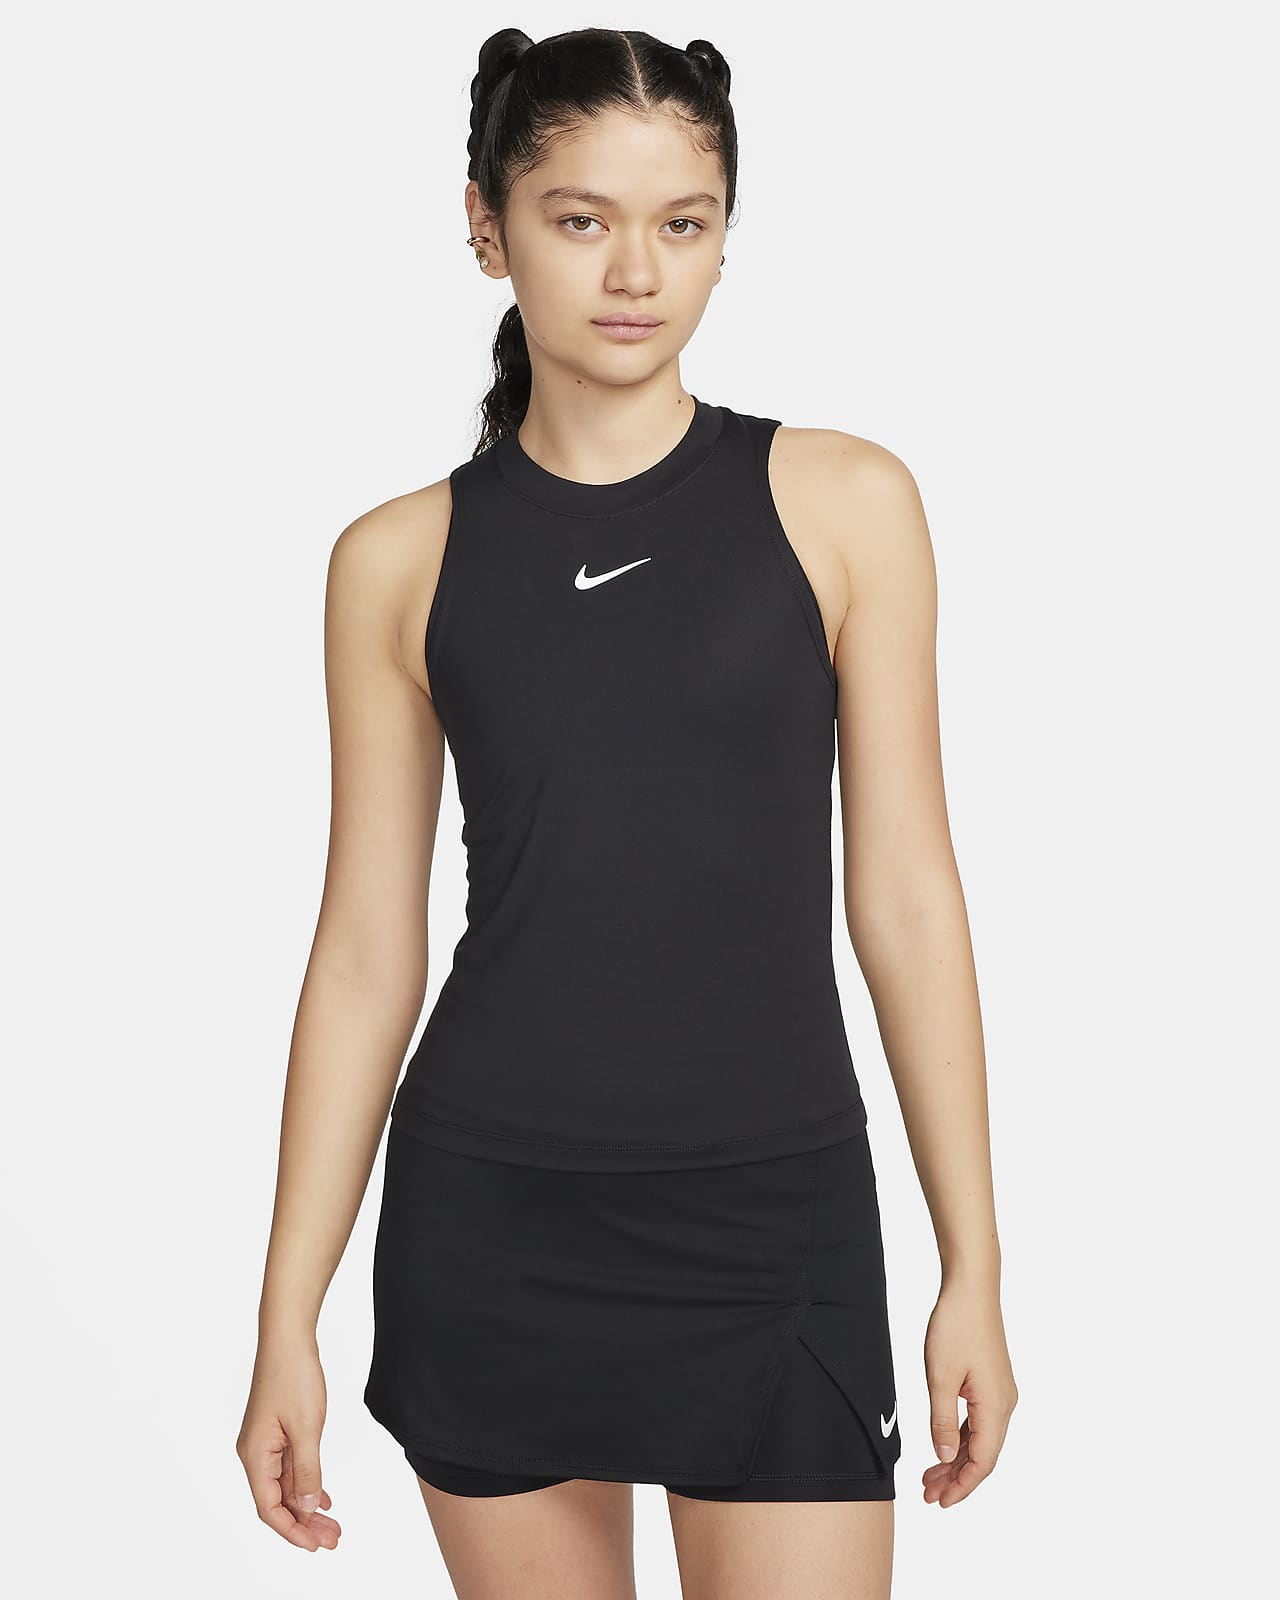 NikeCourt Advantage Women's Dri-FIT Tennis Tank Top.